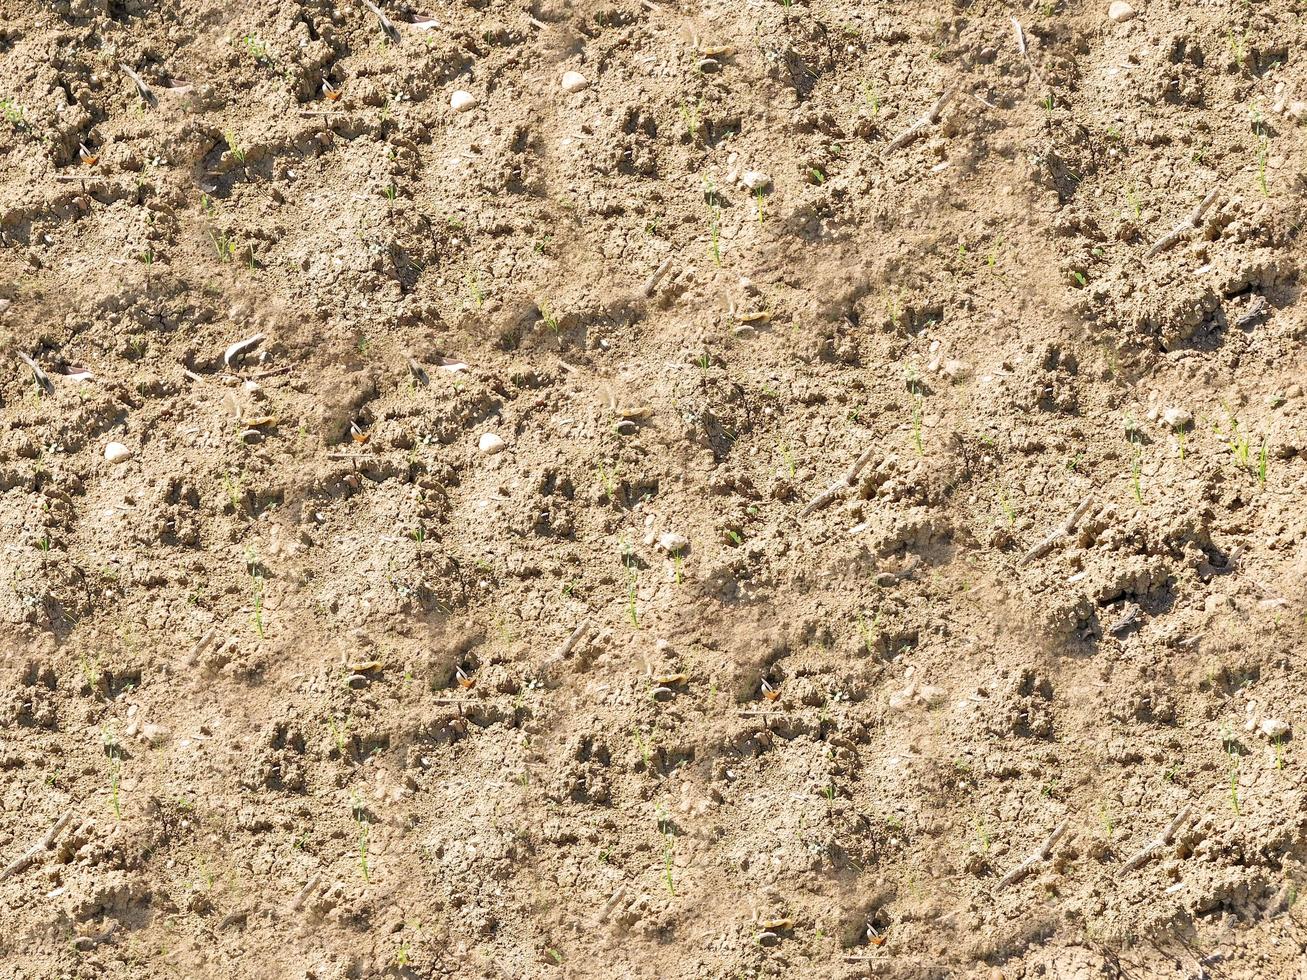 patch de sol sec pour le fond ou la texture photo